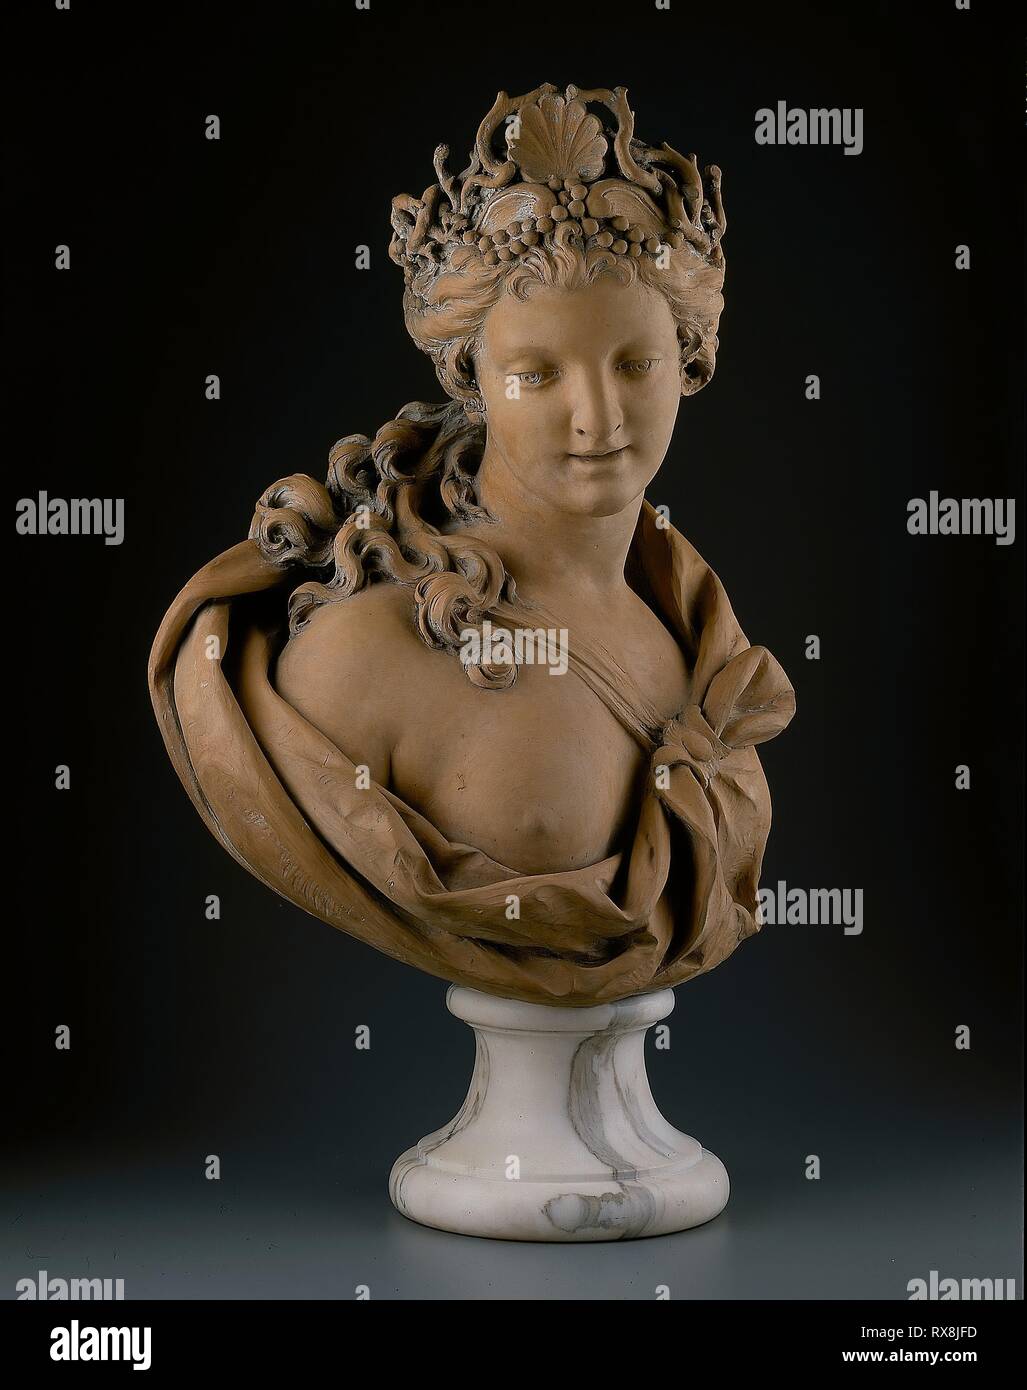 https://c8.alamy.com/comp/RX8JFD/bust-of-amphitrite-lambert-sigisbert-adam-french-1700-1759-date-1720-1730-dimensions-h-62-cm-24-in-terracotta-origin-france-museum-the-chicago-art-institute-RX8JFD.jpg